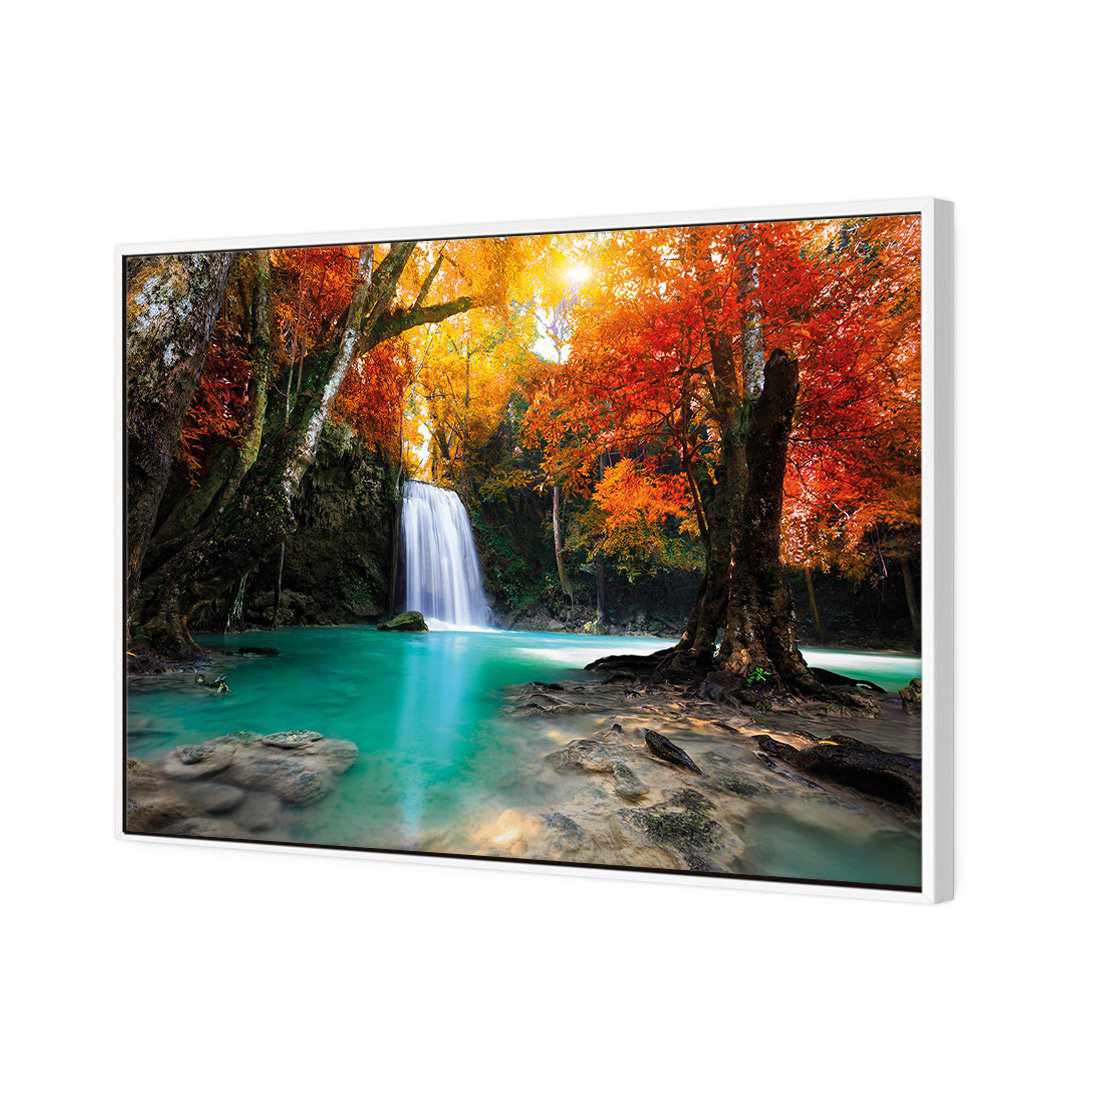 Autumn Waterfall Magic Canvas Art-Canvas-Wall Art Designs-45x30cm-Canvas - White Frame-Wall Art Designs